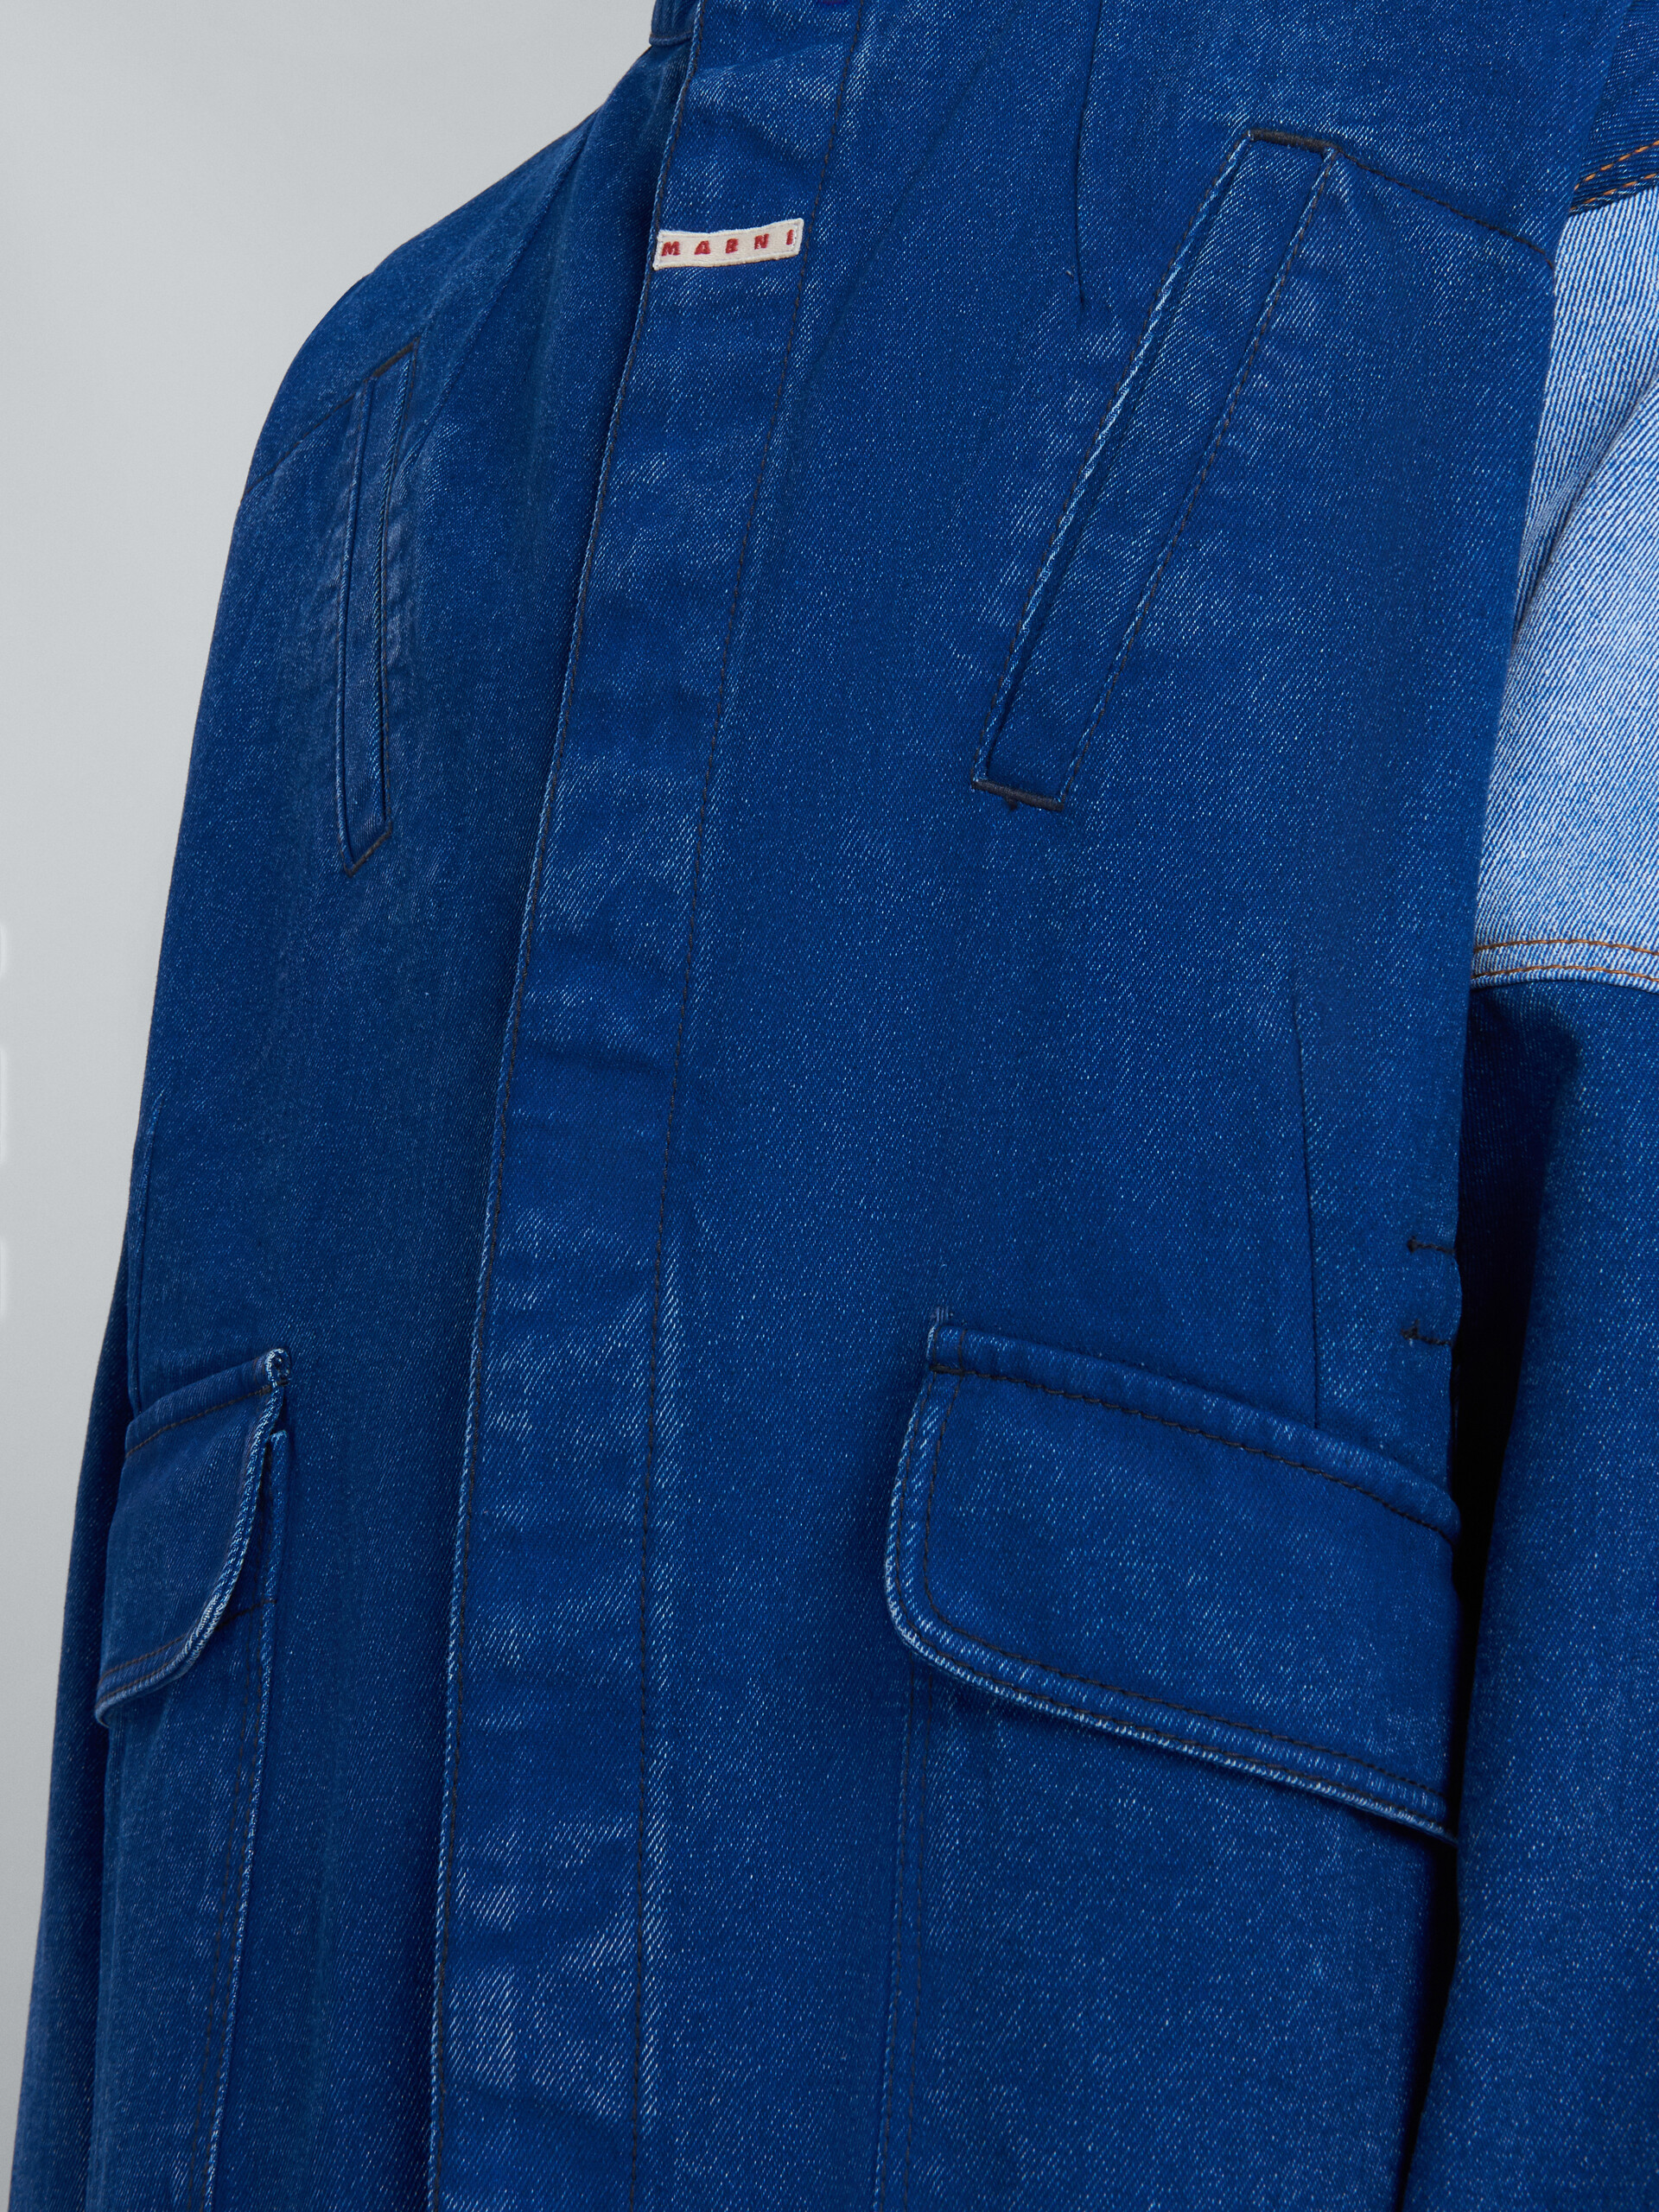 Jacket in coated blue denim - Jackets - Image 5